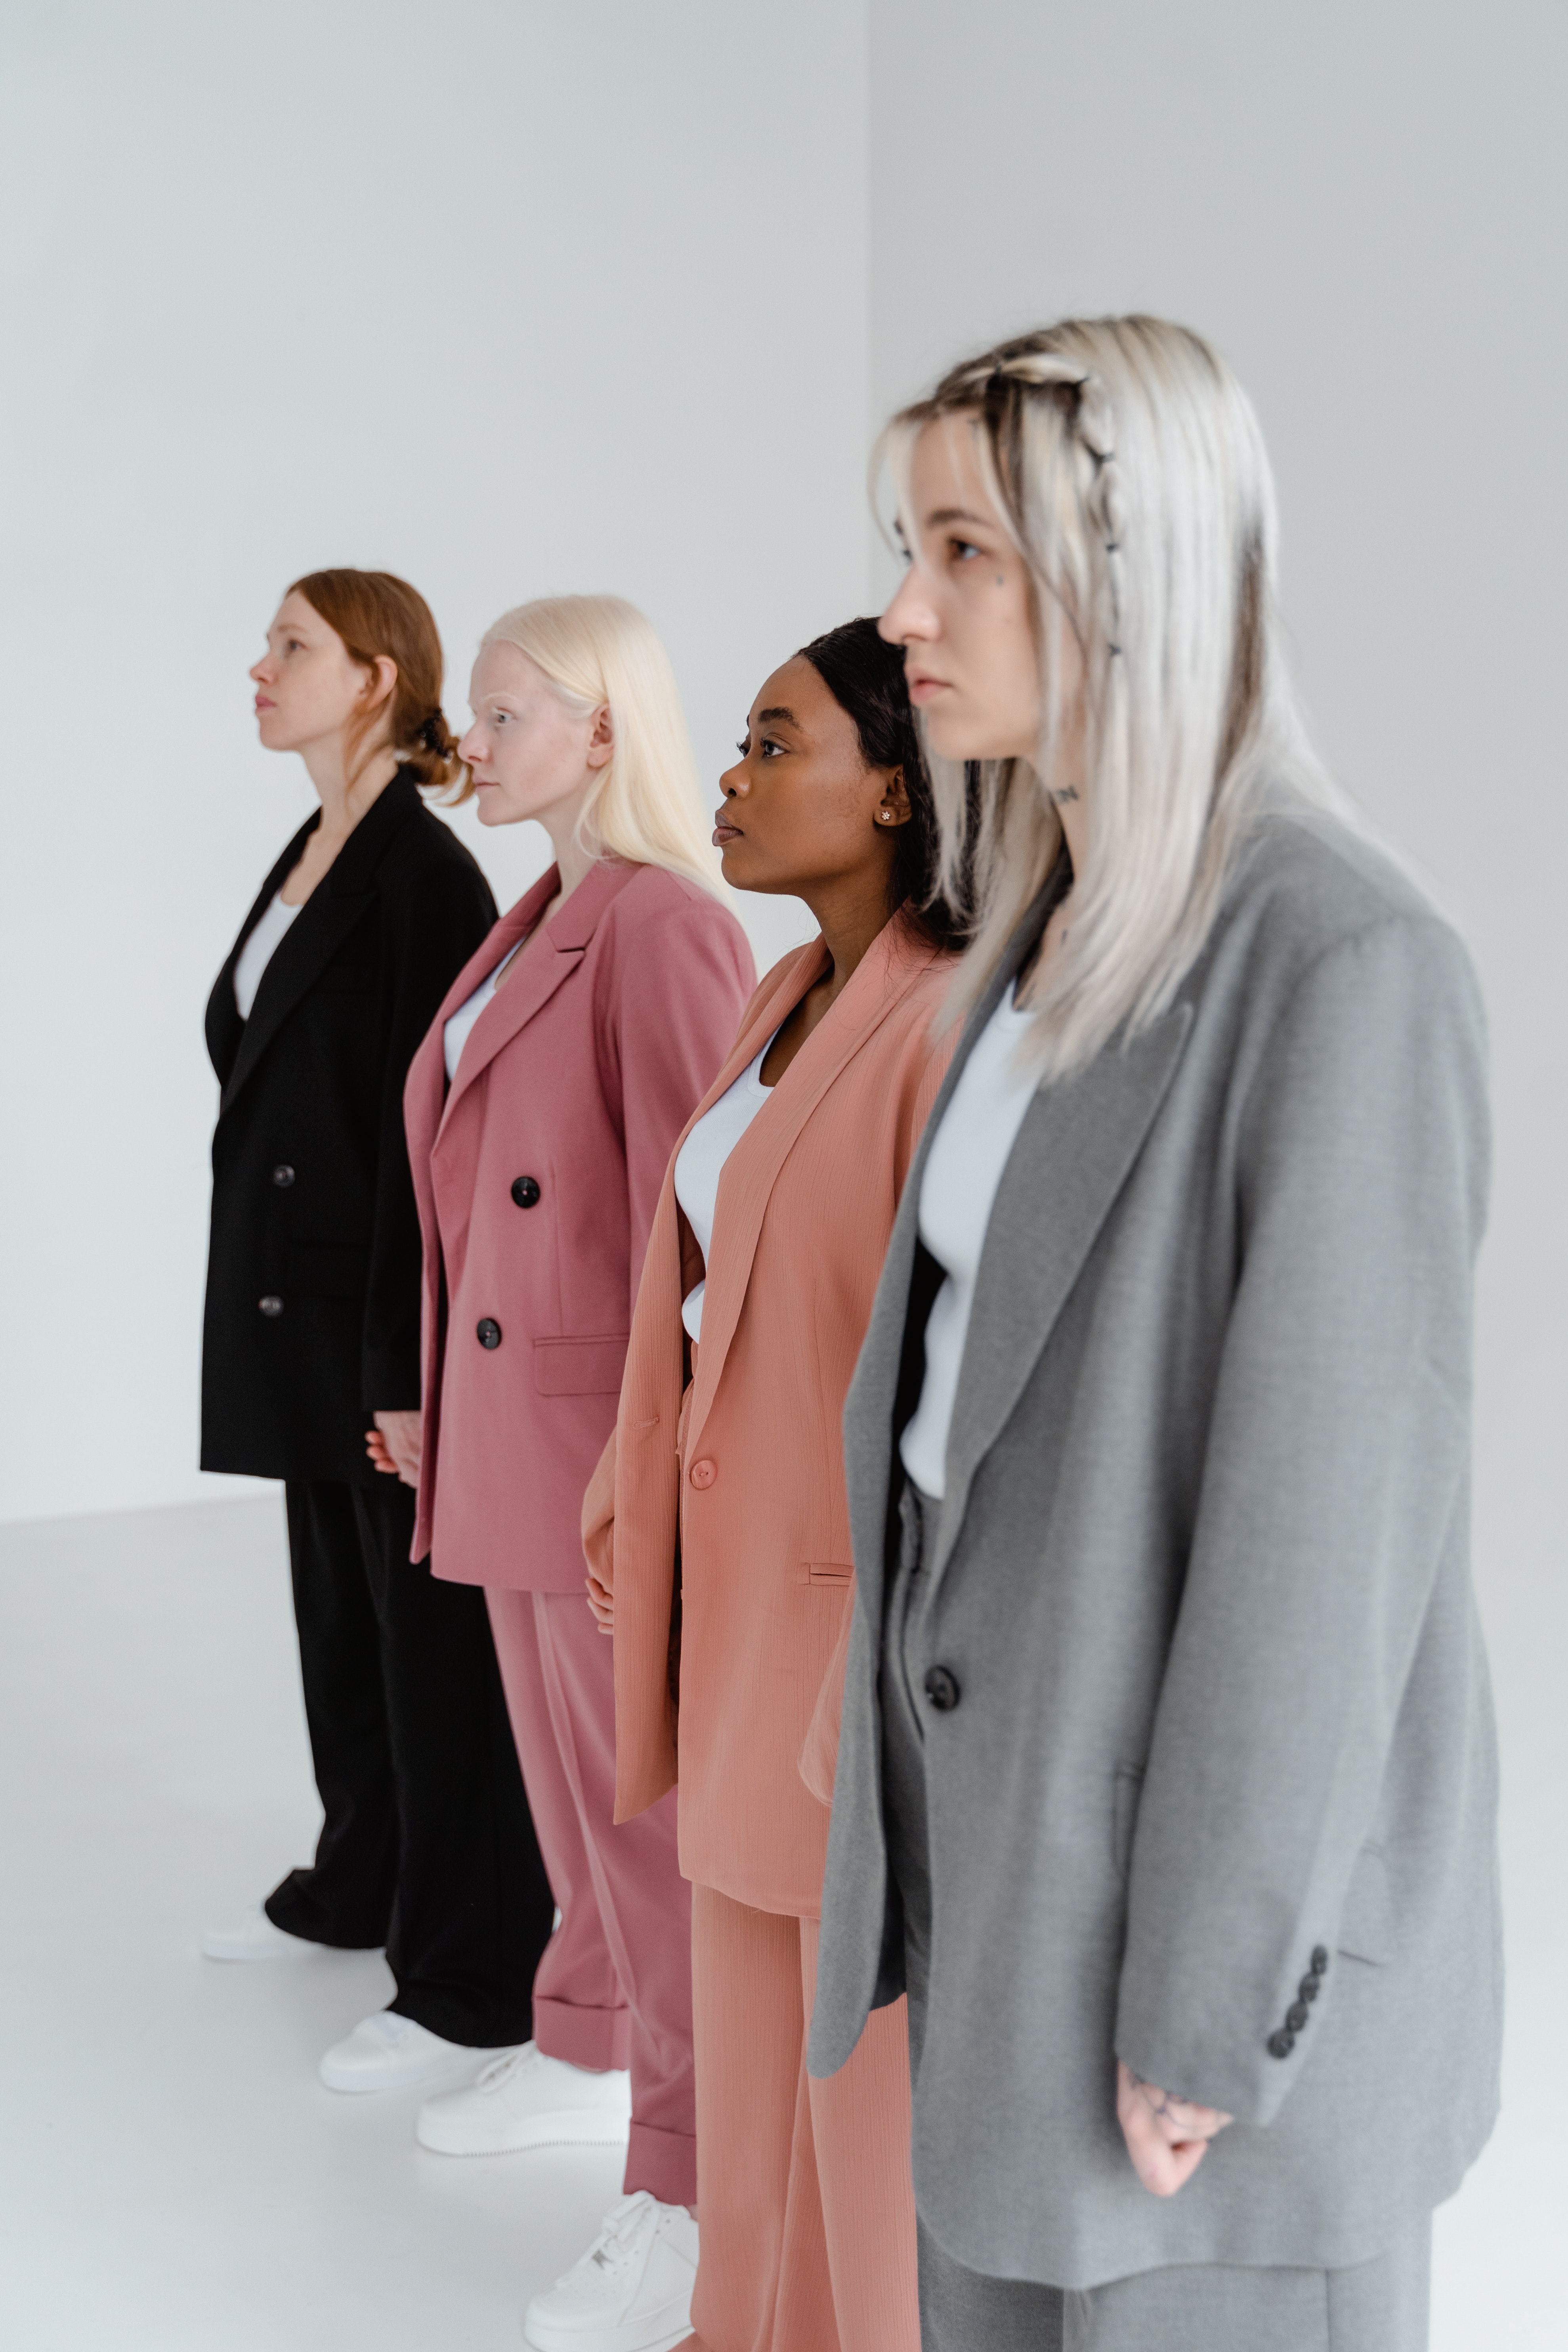 Women in suits | Source: Pexels